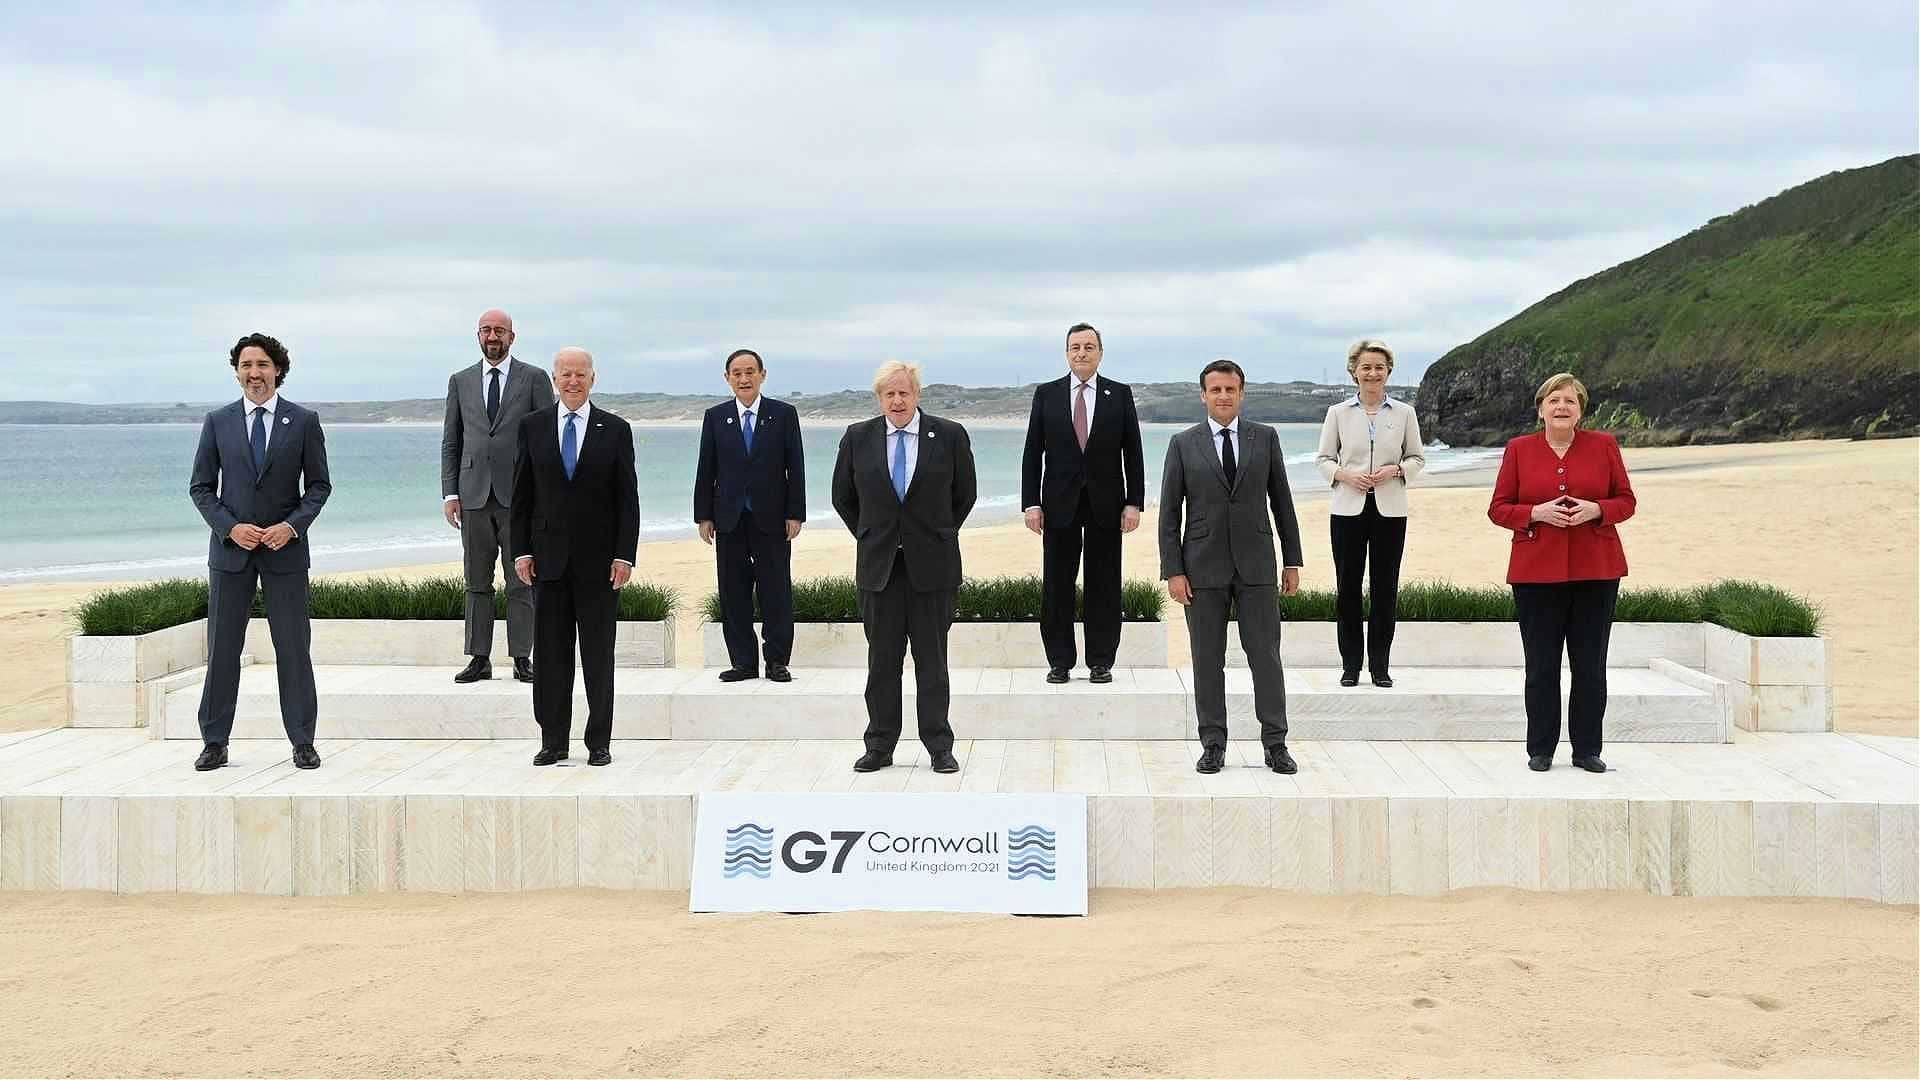 мировое изменение климата возглавило повестку дня, поскольку мировые лидеры встретились в Корнуолле за время G7 с оливковым маслом